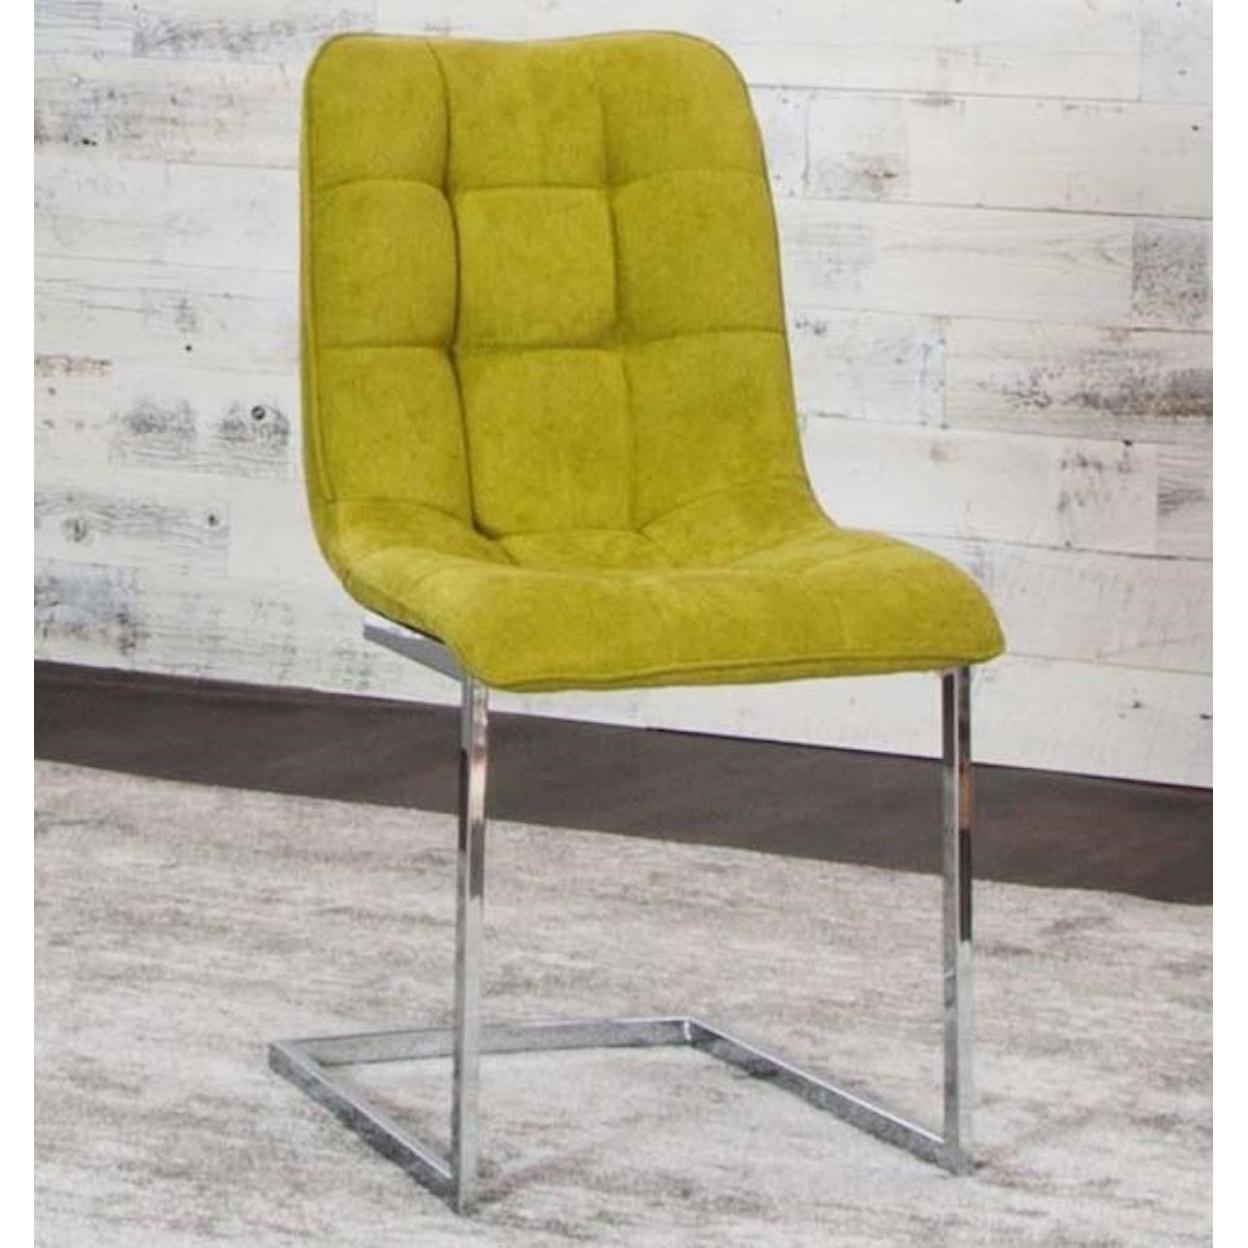 Cramco, Inc Rafina Fern/Chrome Side Chair (Welded)